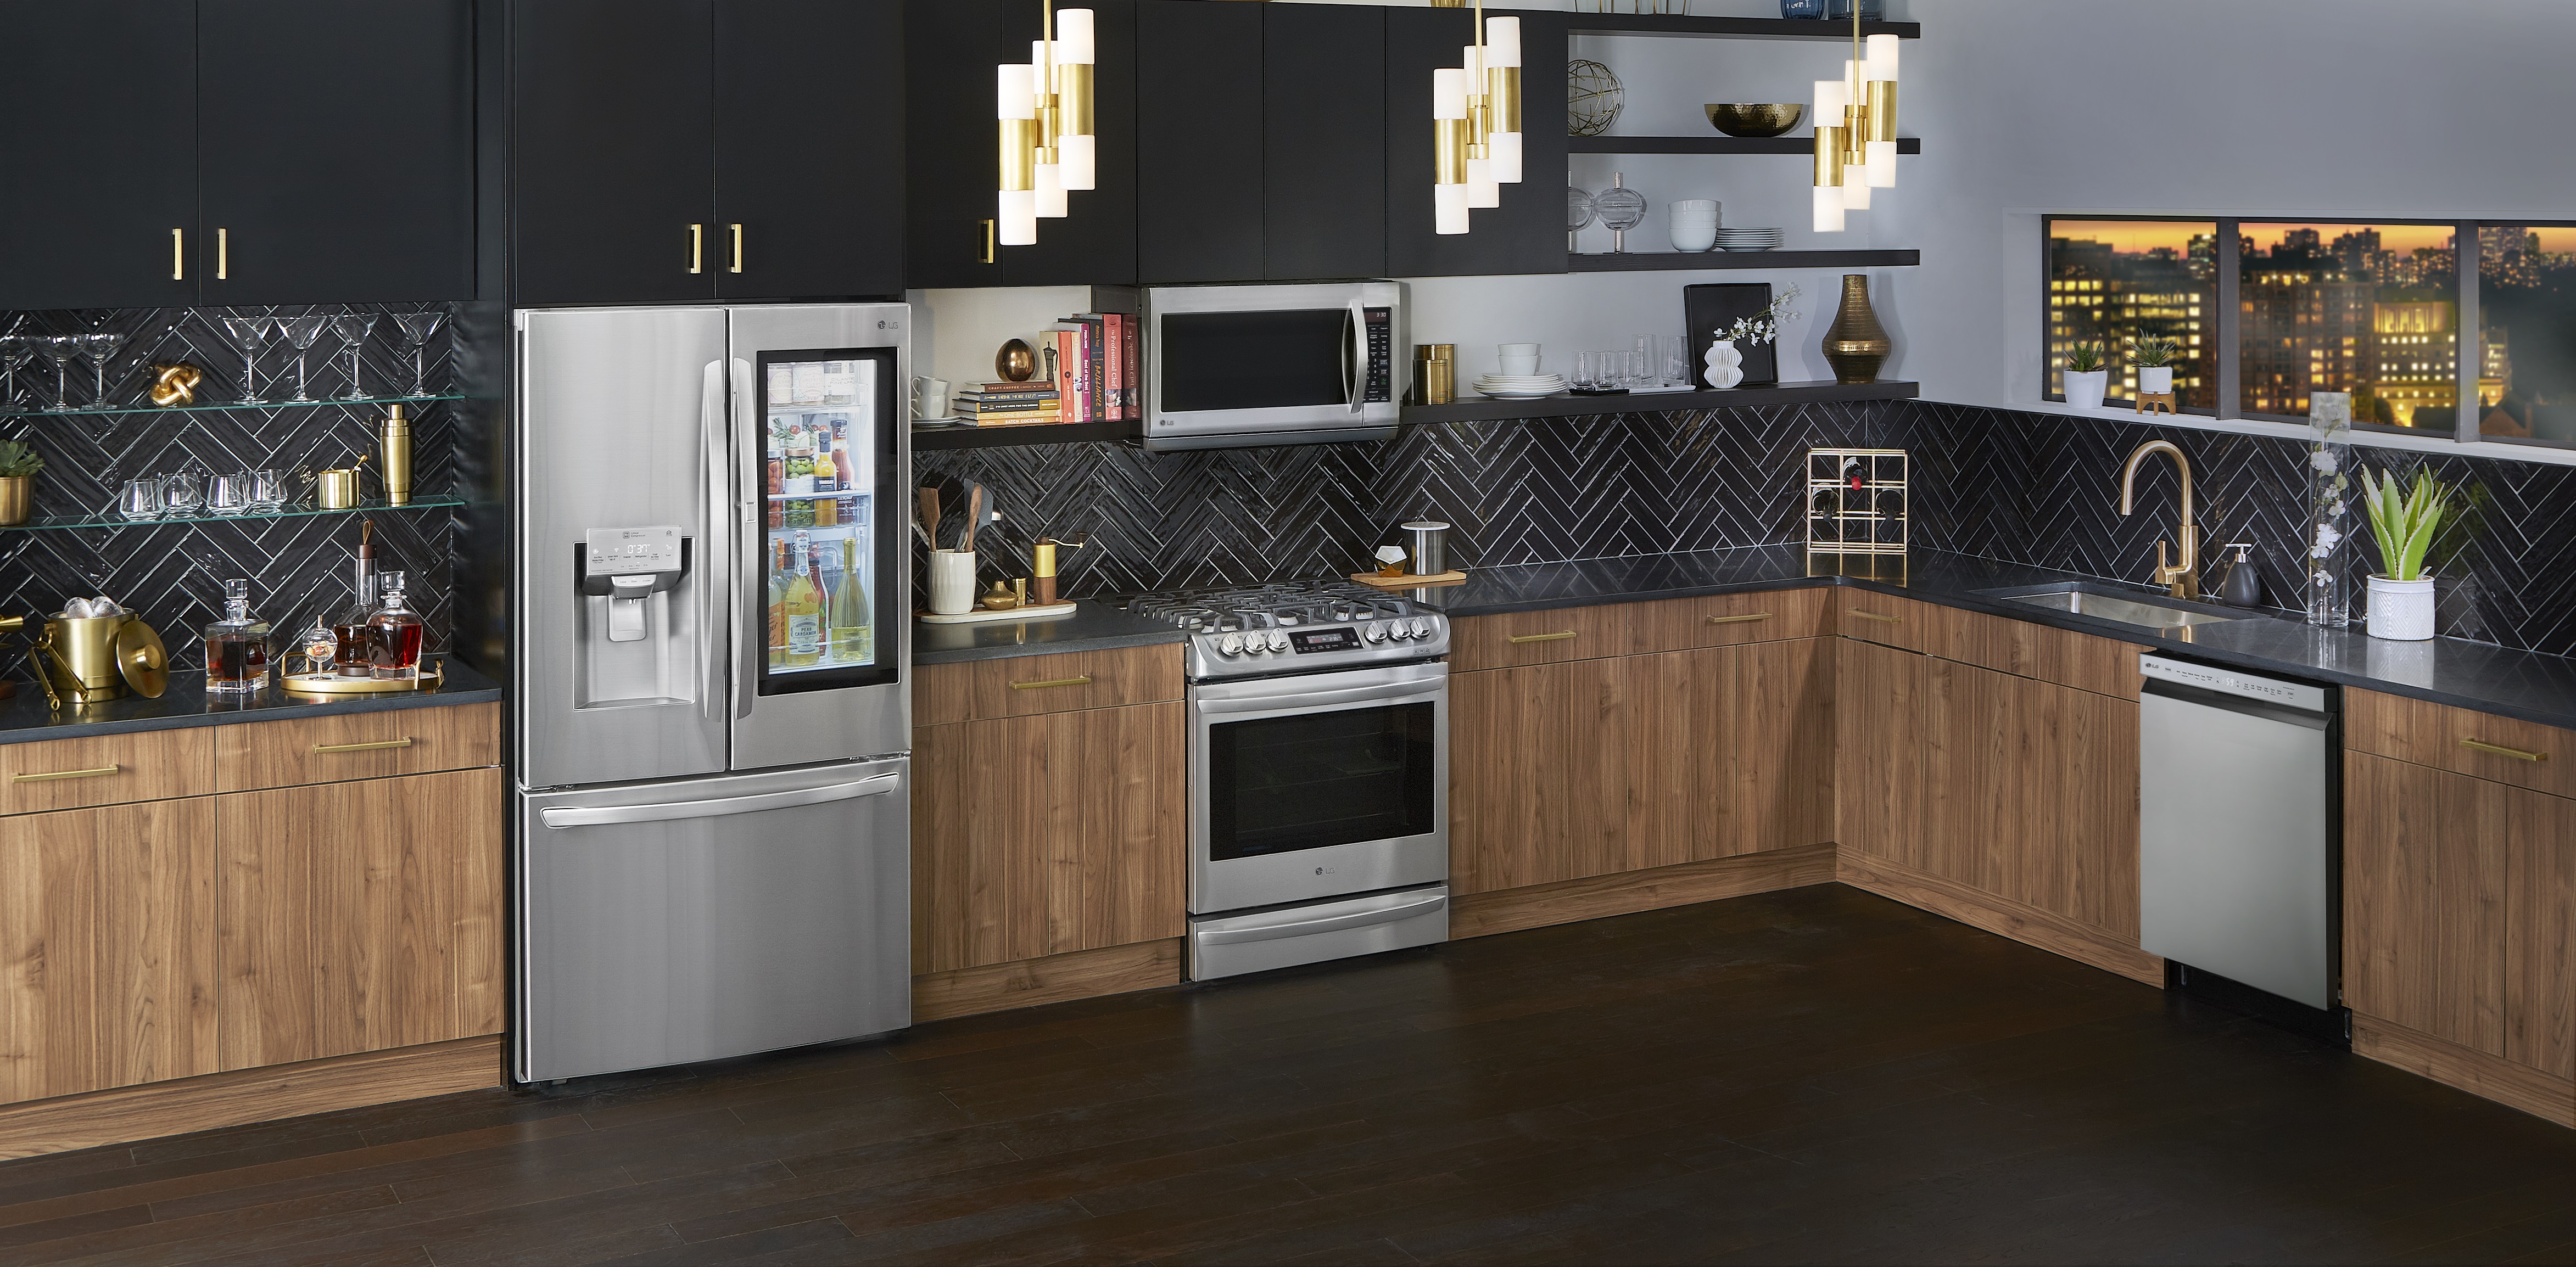 modern kitchen with LG appliances